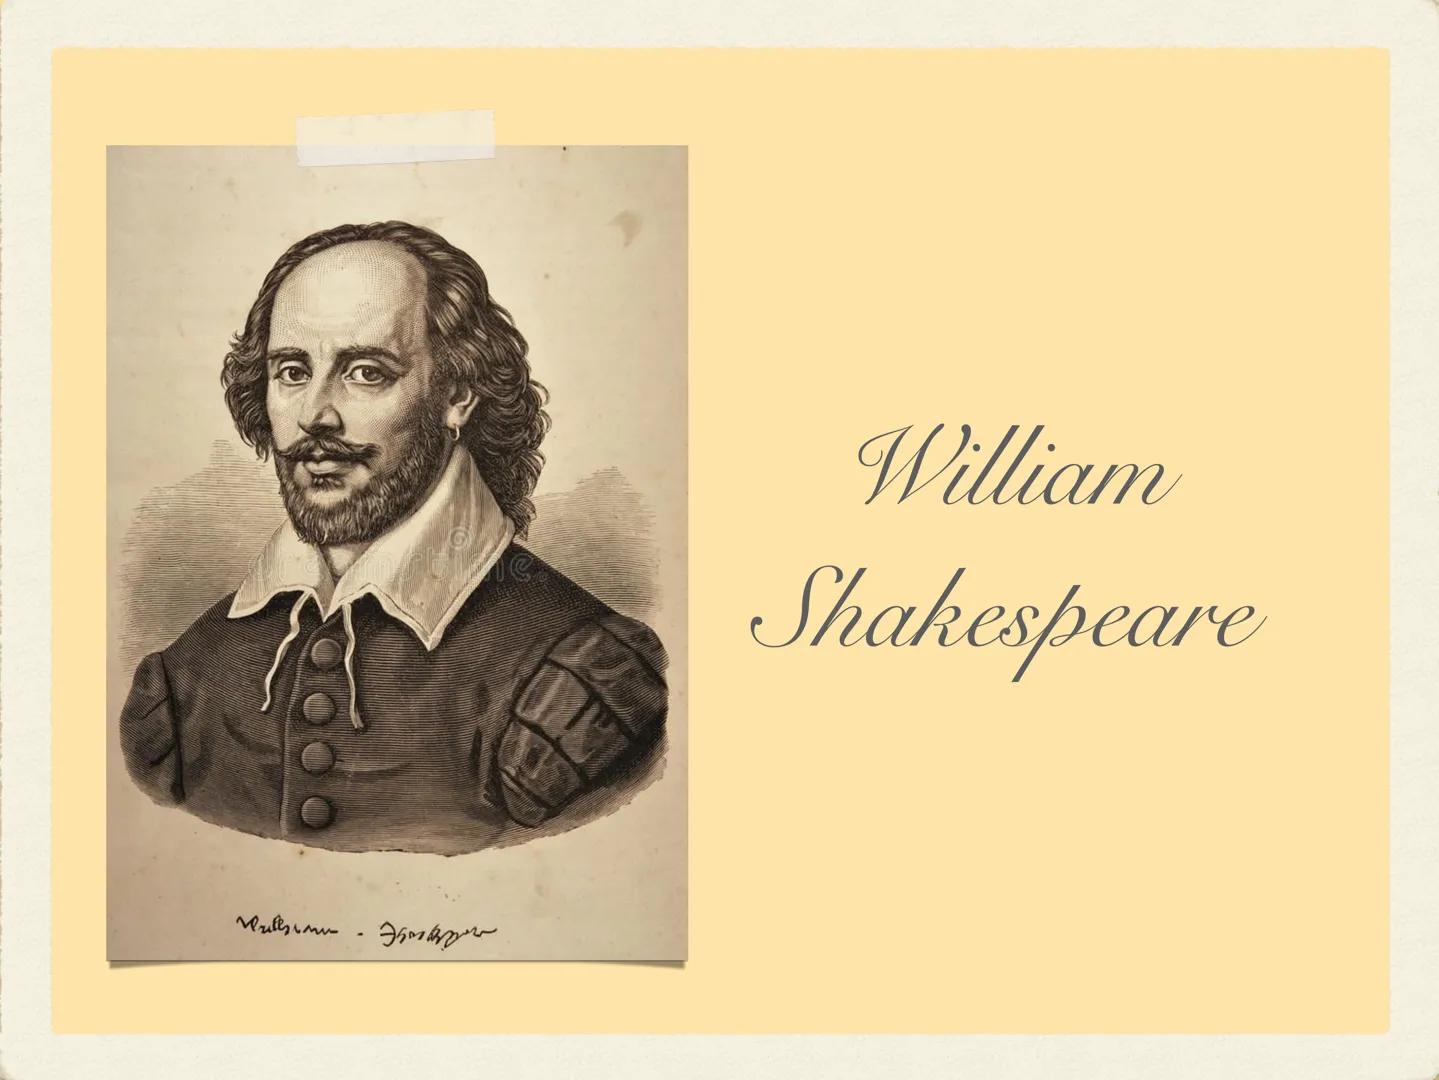 Vill
Это взим
William
Shakespeare Nasce il 24 aprile 1564
a Stratford-upon-Avon
Frequenta la scuola statale
nella stessa città dove
studia l